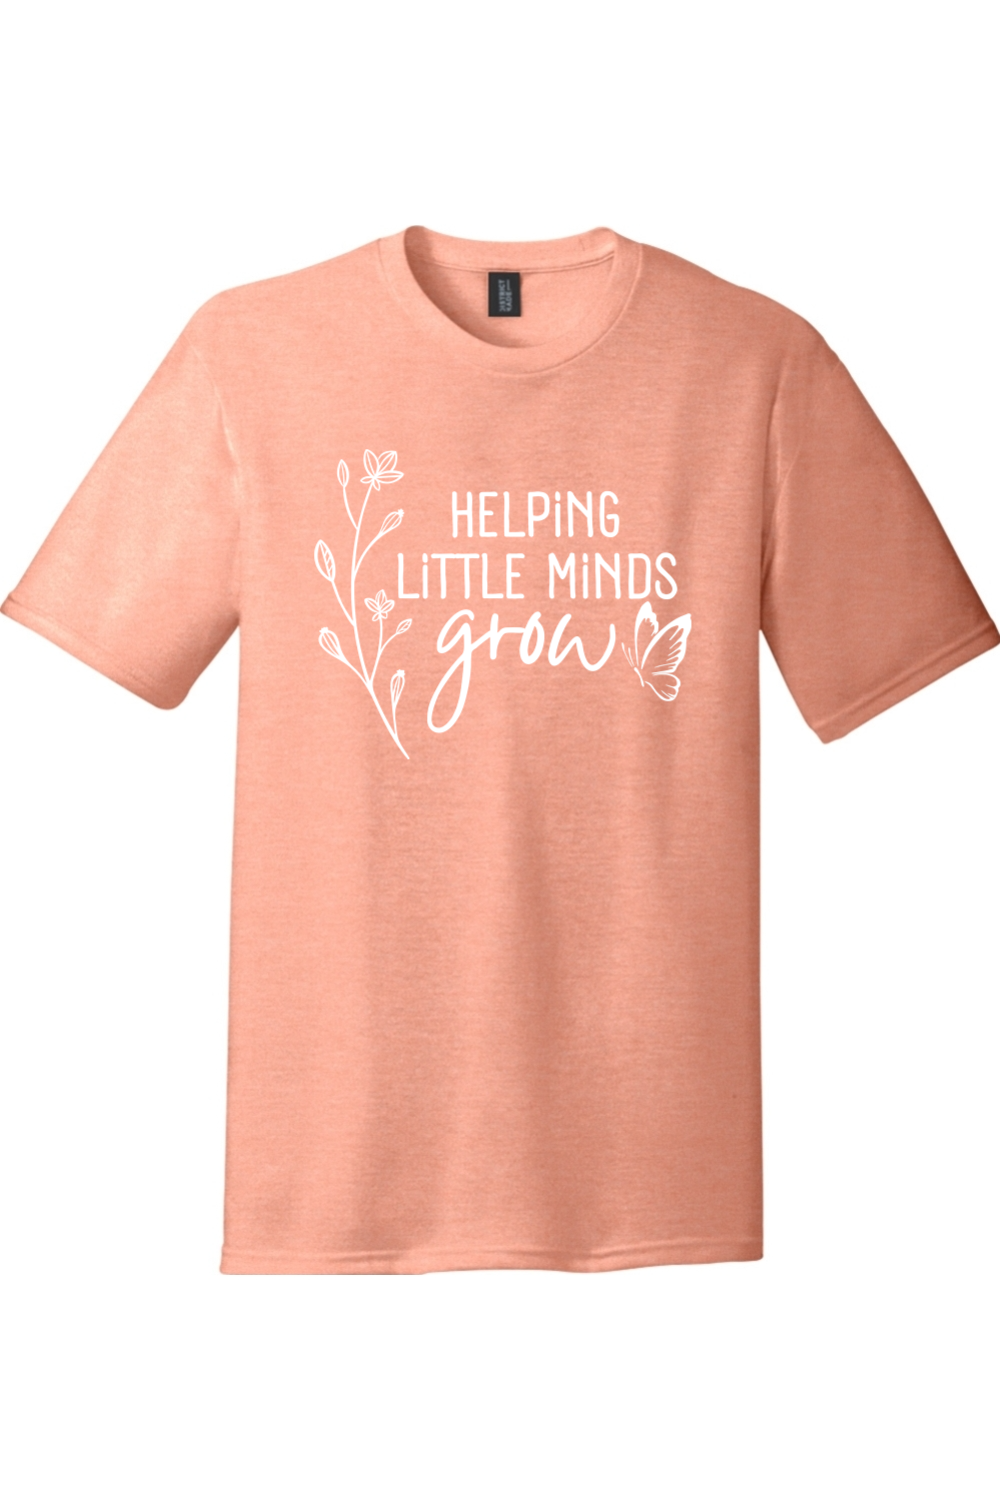 Helping Little Minds Grow | Premium Tri-Blend T-Shirt